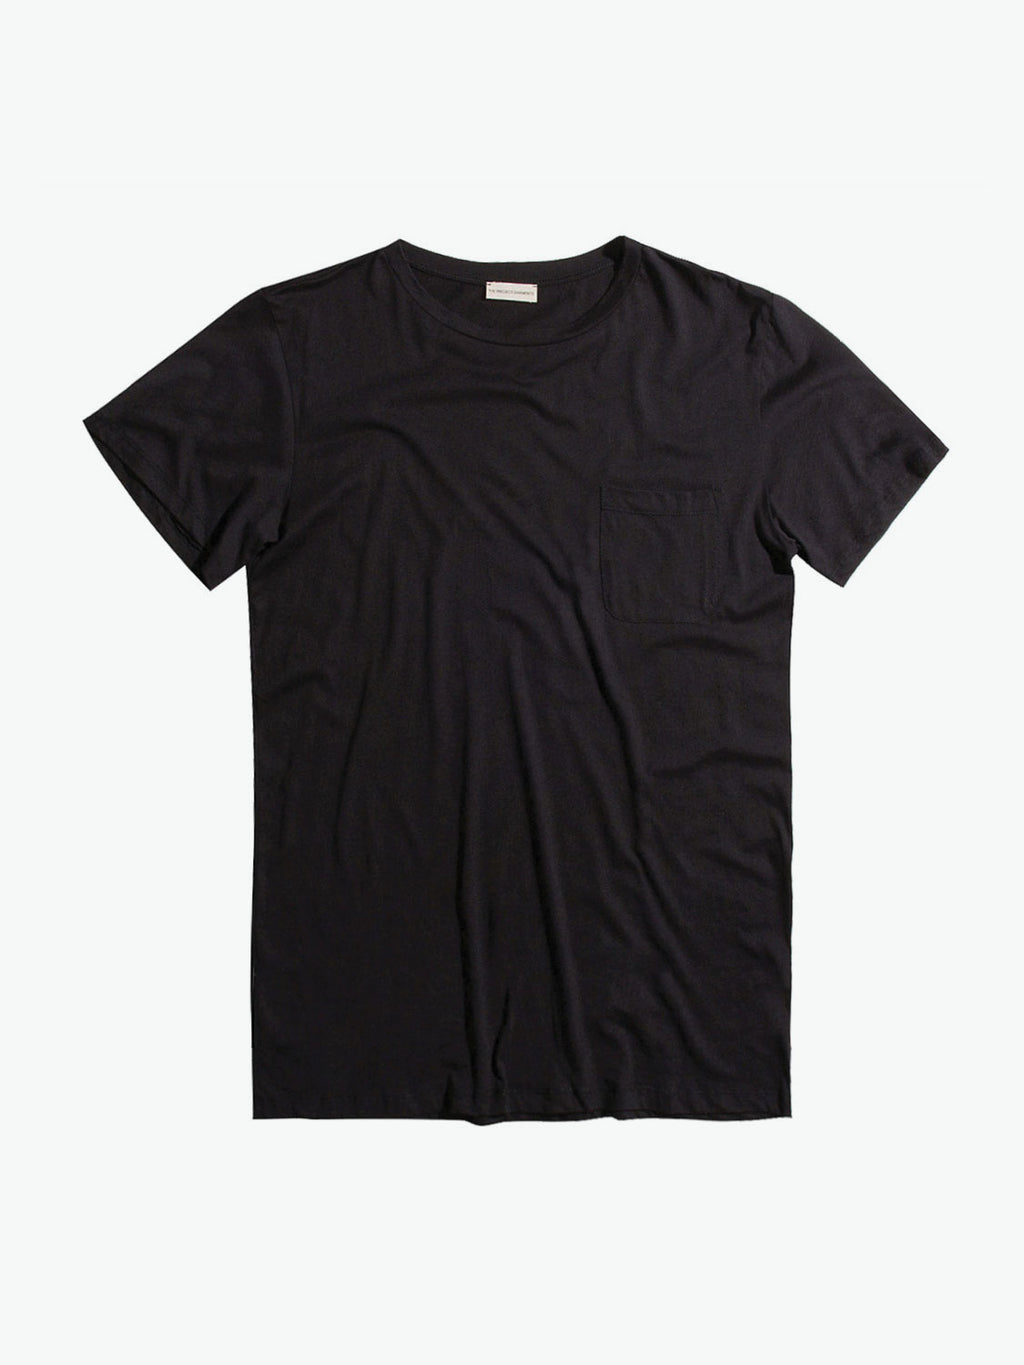 Crew Neck Modal Pocket T-shirt Black | A